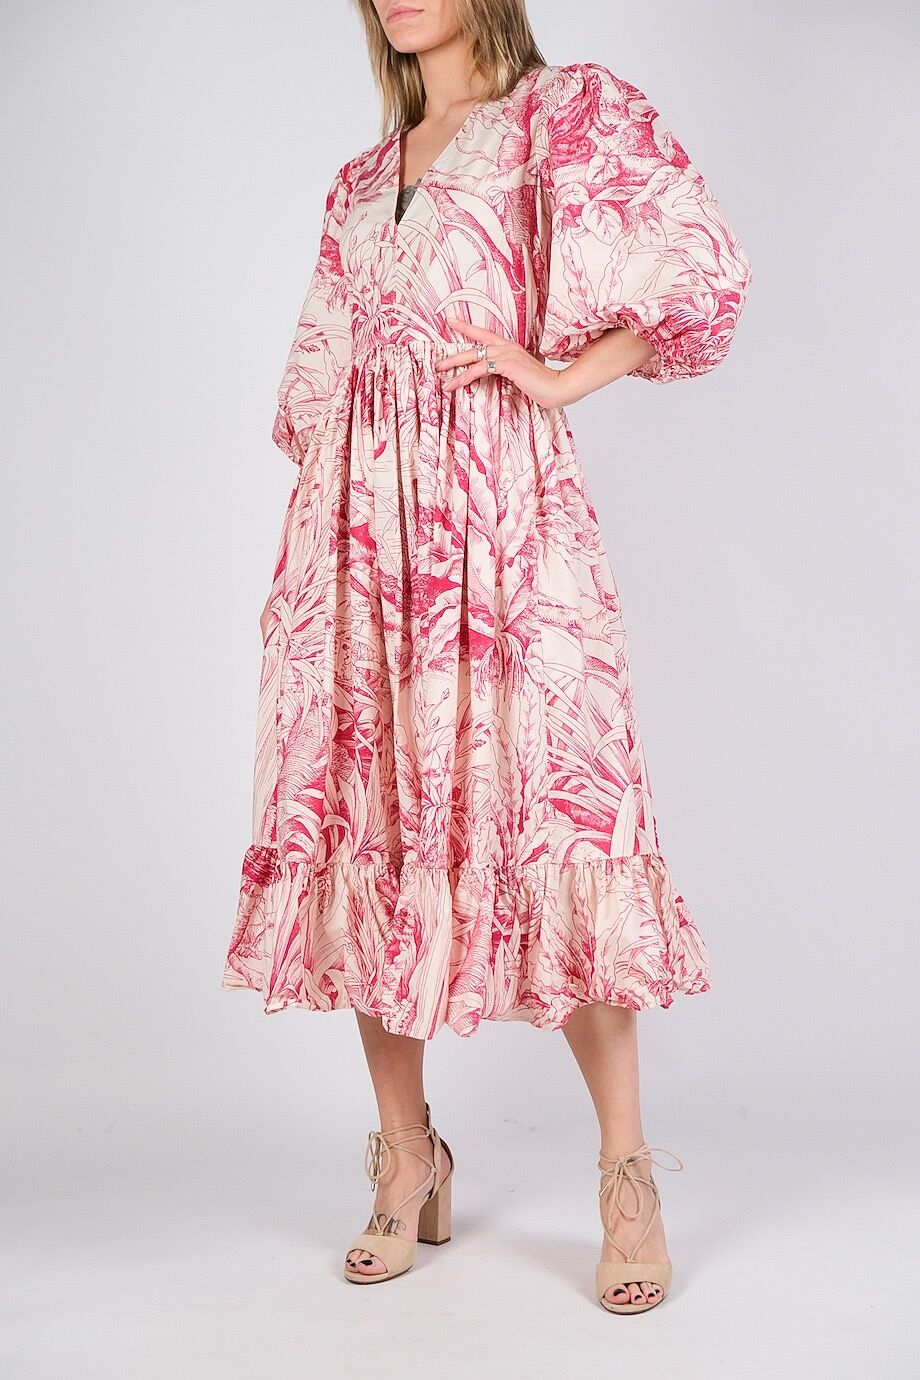 image 2 Хлопковое платье бежевого цвета с розовым орнаментом